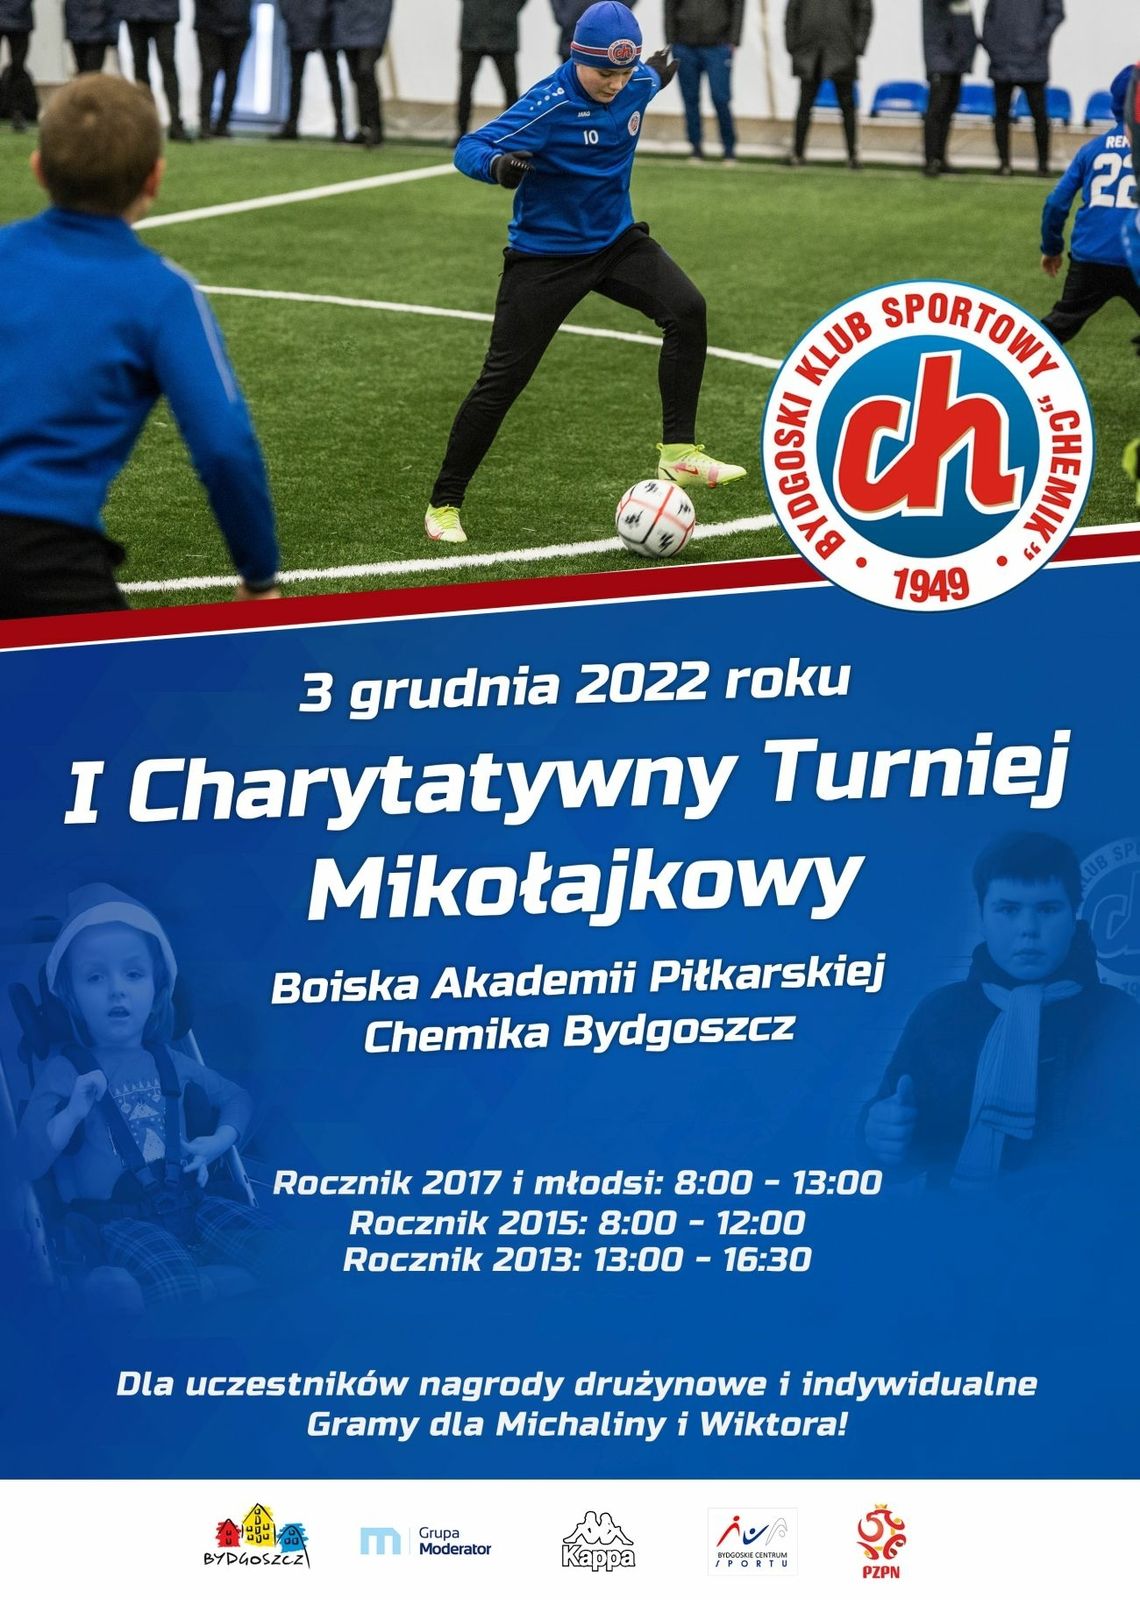 Zbliża się I Charytatywny Turniej Mikołajkowy na obiektach Chemika Bydgoszcz 